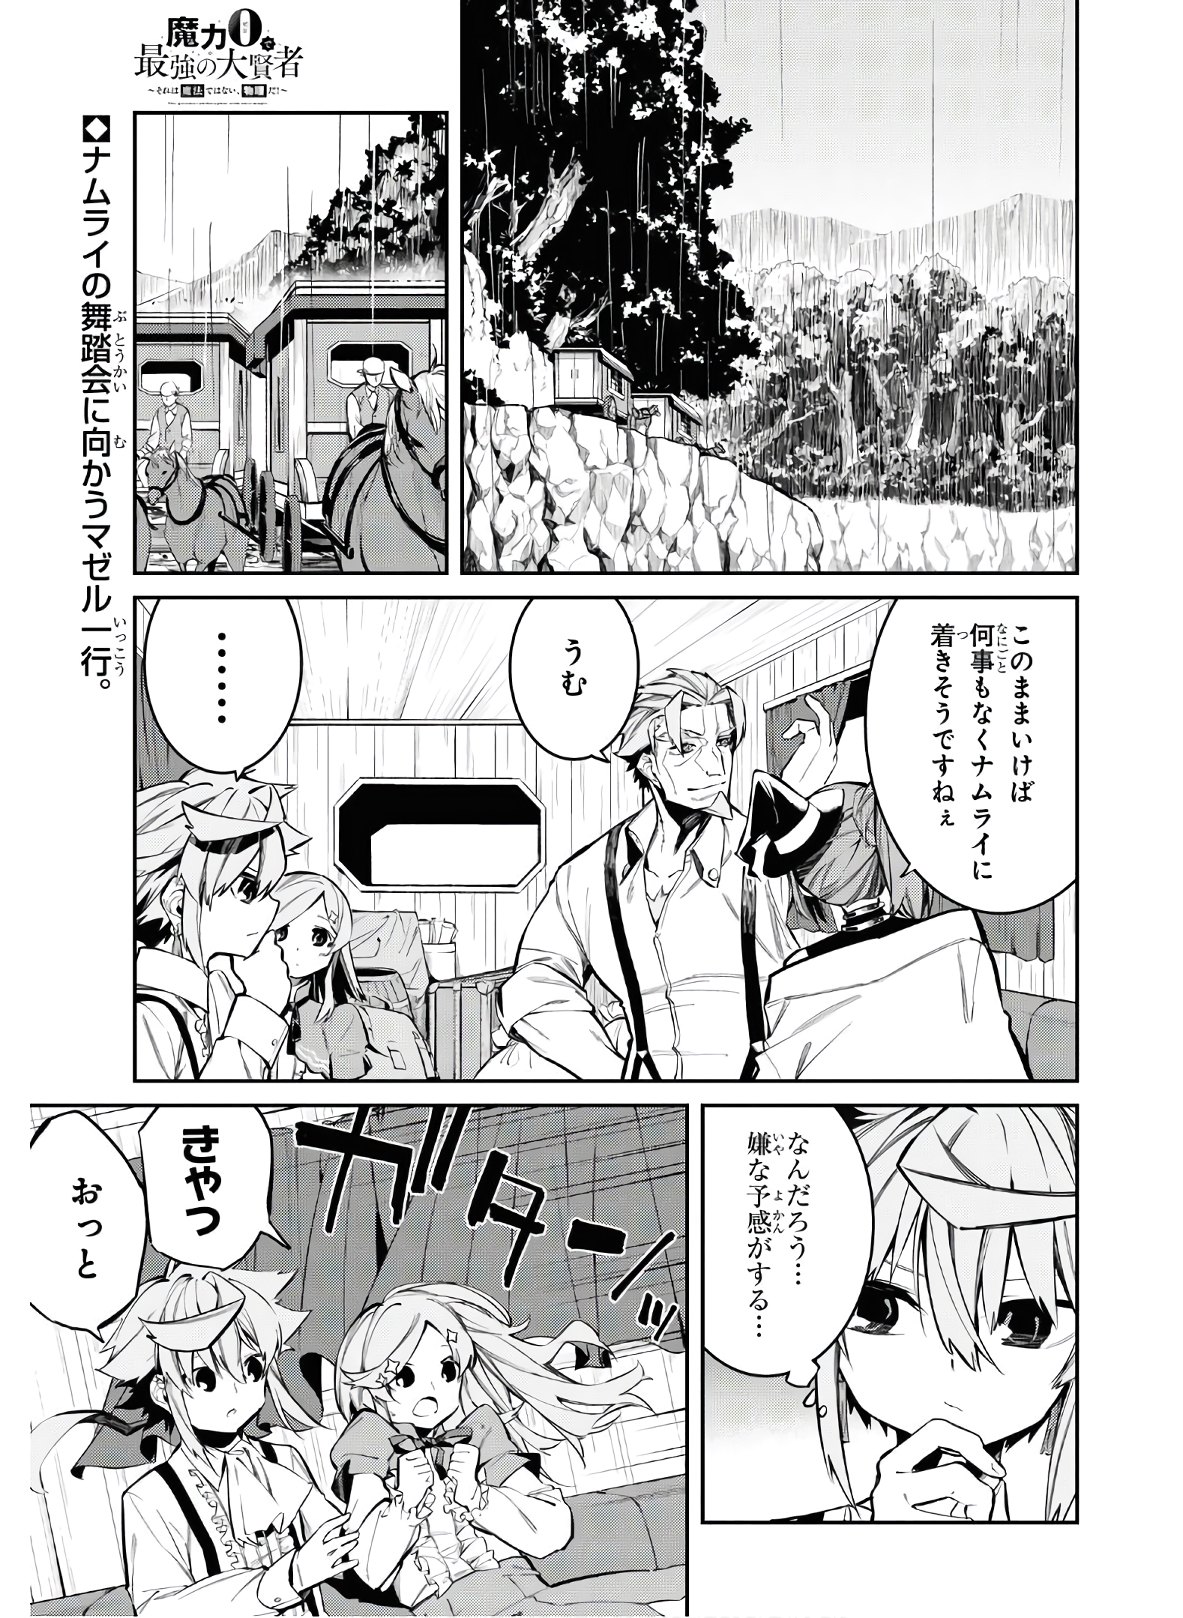 Maryoku 0 de Saikyou no Daikenja ~Sore wa Mahou dewa Nai, Butsuri da!~ - Chapter 4 - Page 1